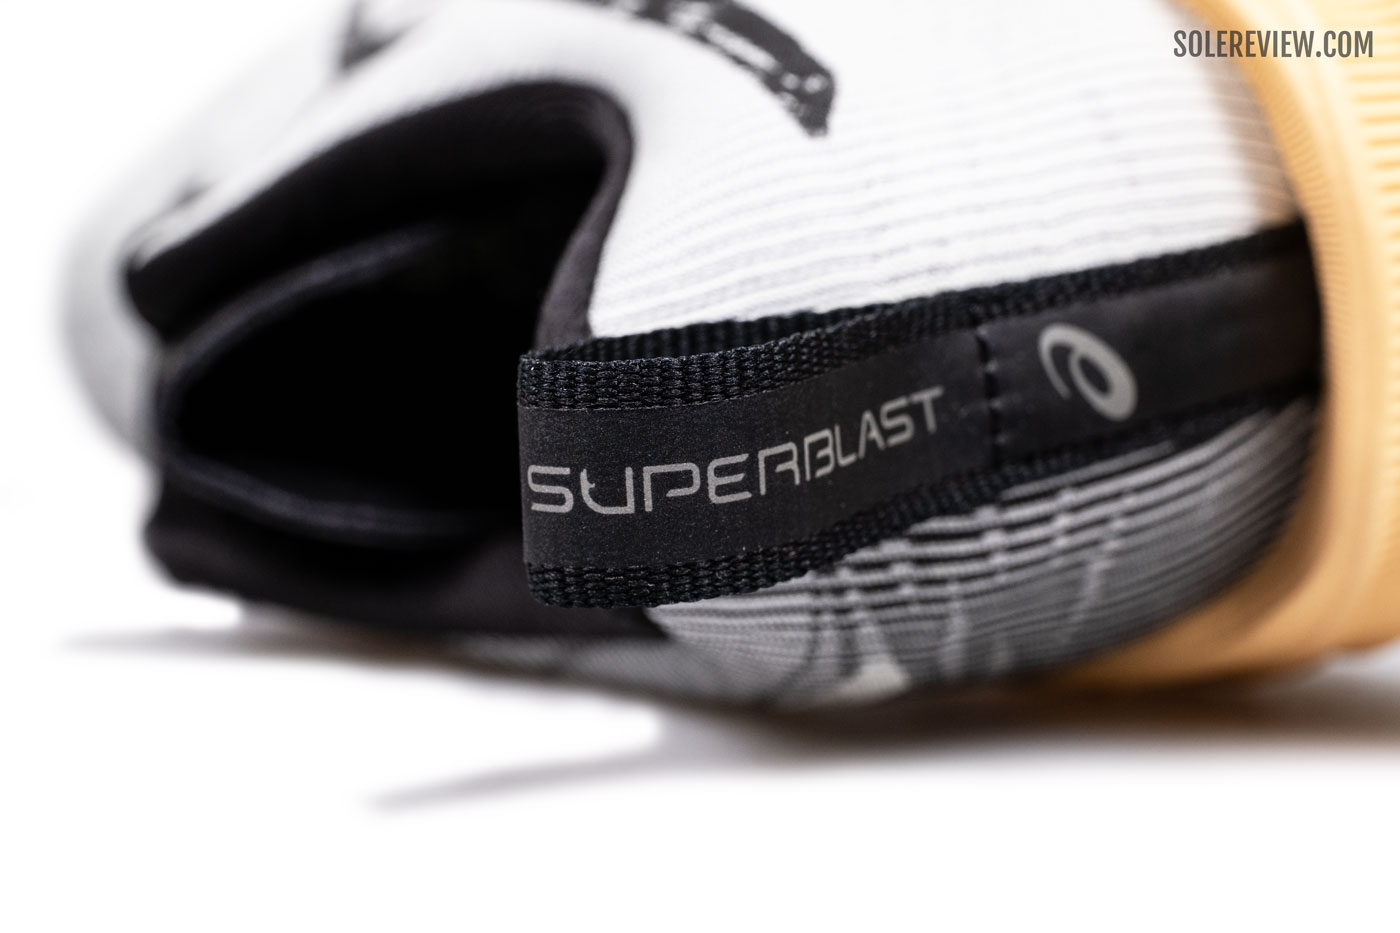 The heel pull tab of the Asics Superblast.